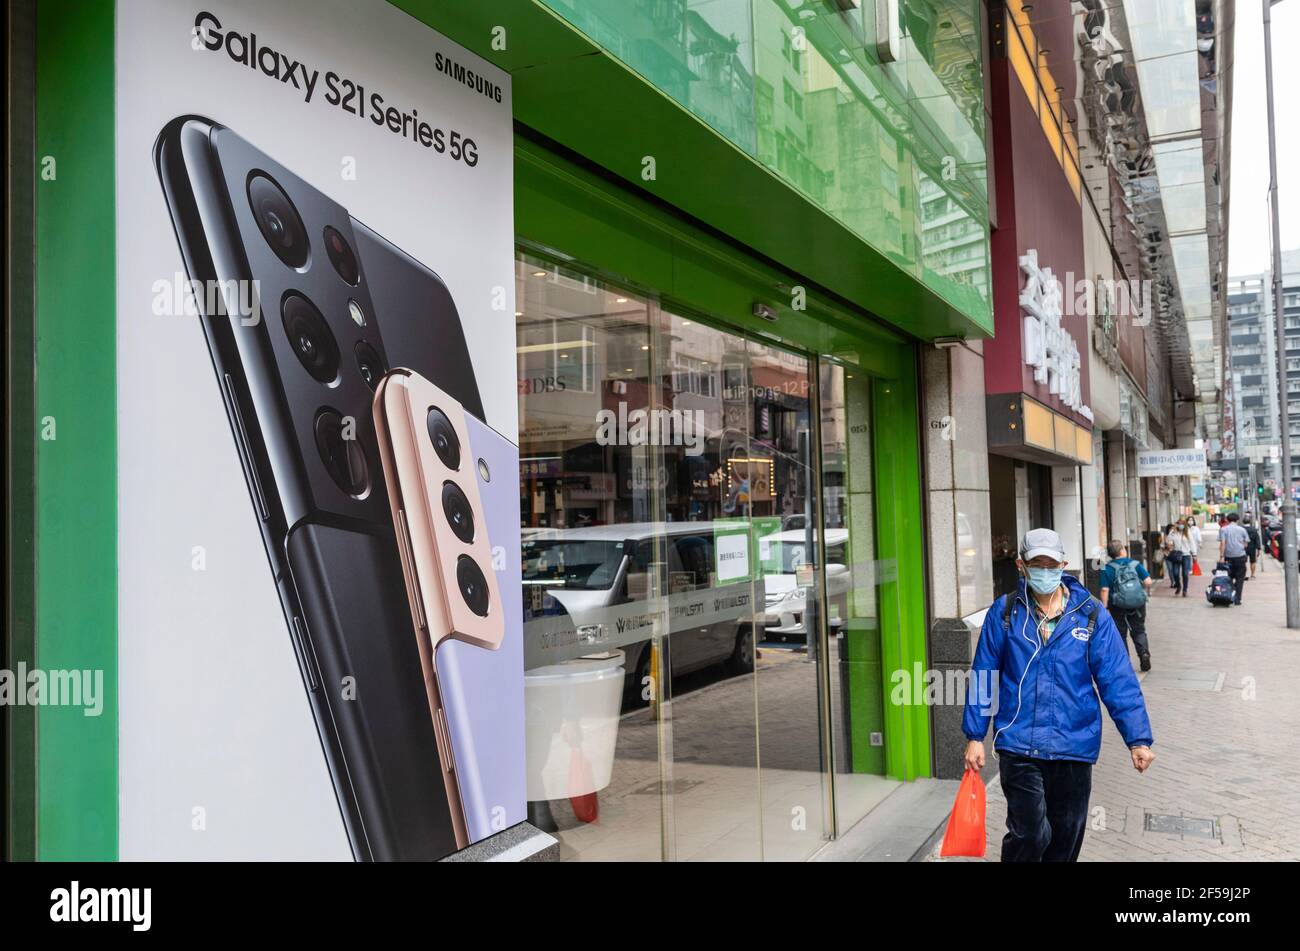 Samsung, conglomerado multinacional de electrónica de Corea del Sur, anuncia el teléfono inteligente Samsung Galaxy S21 5G en una cartelera en Hong Kong. (Foto de Budrul Chukrut / SOPA Images/Sipa USA) Foto de stock